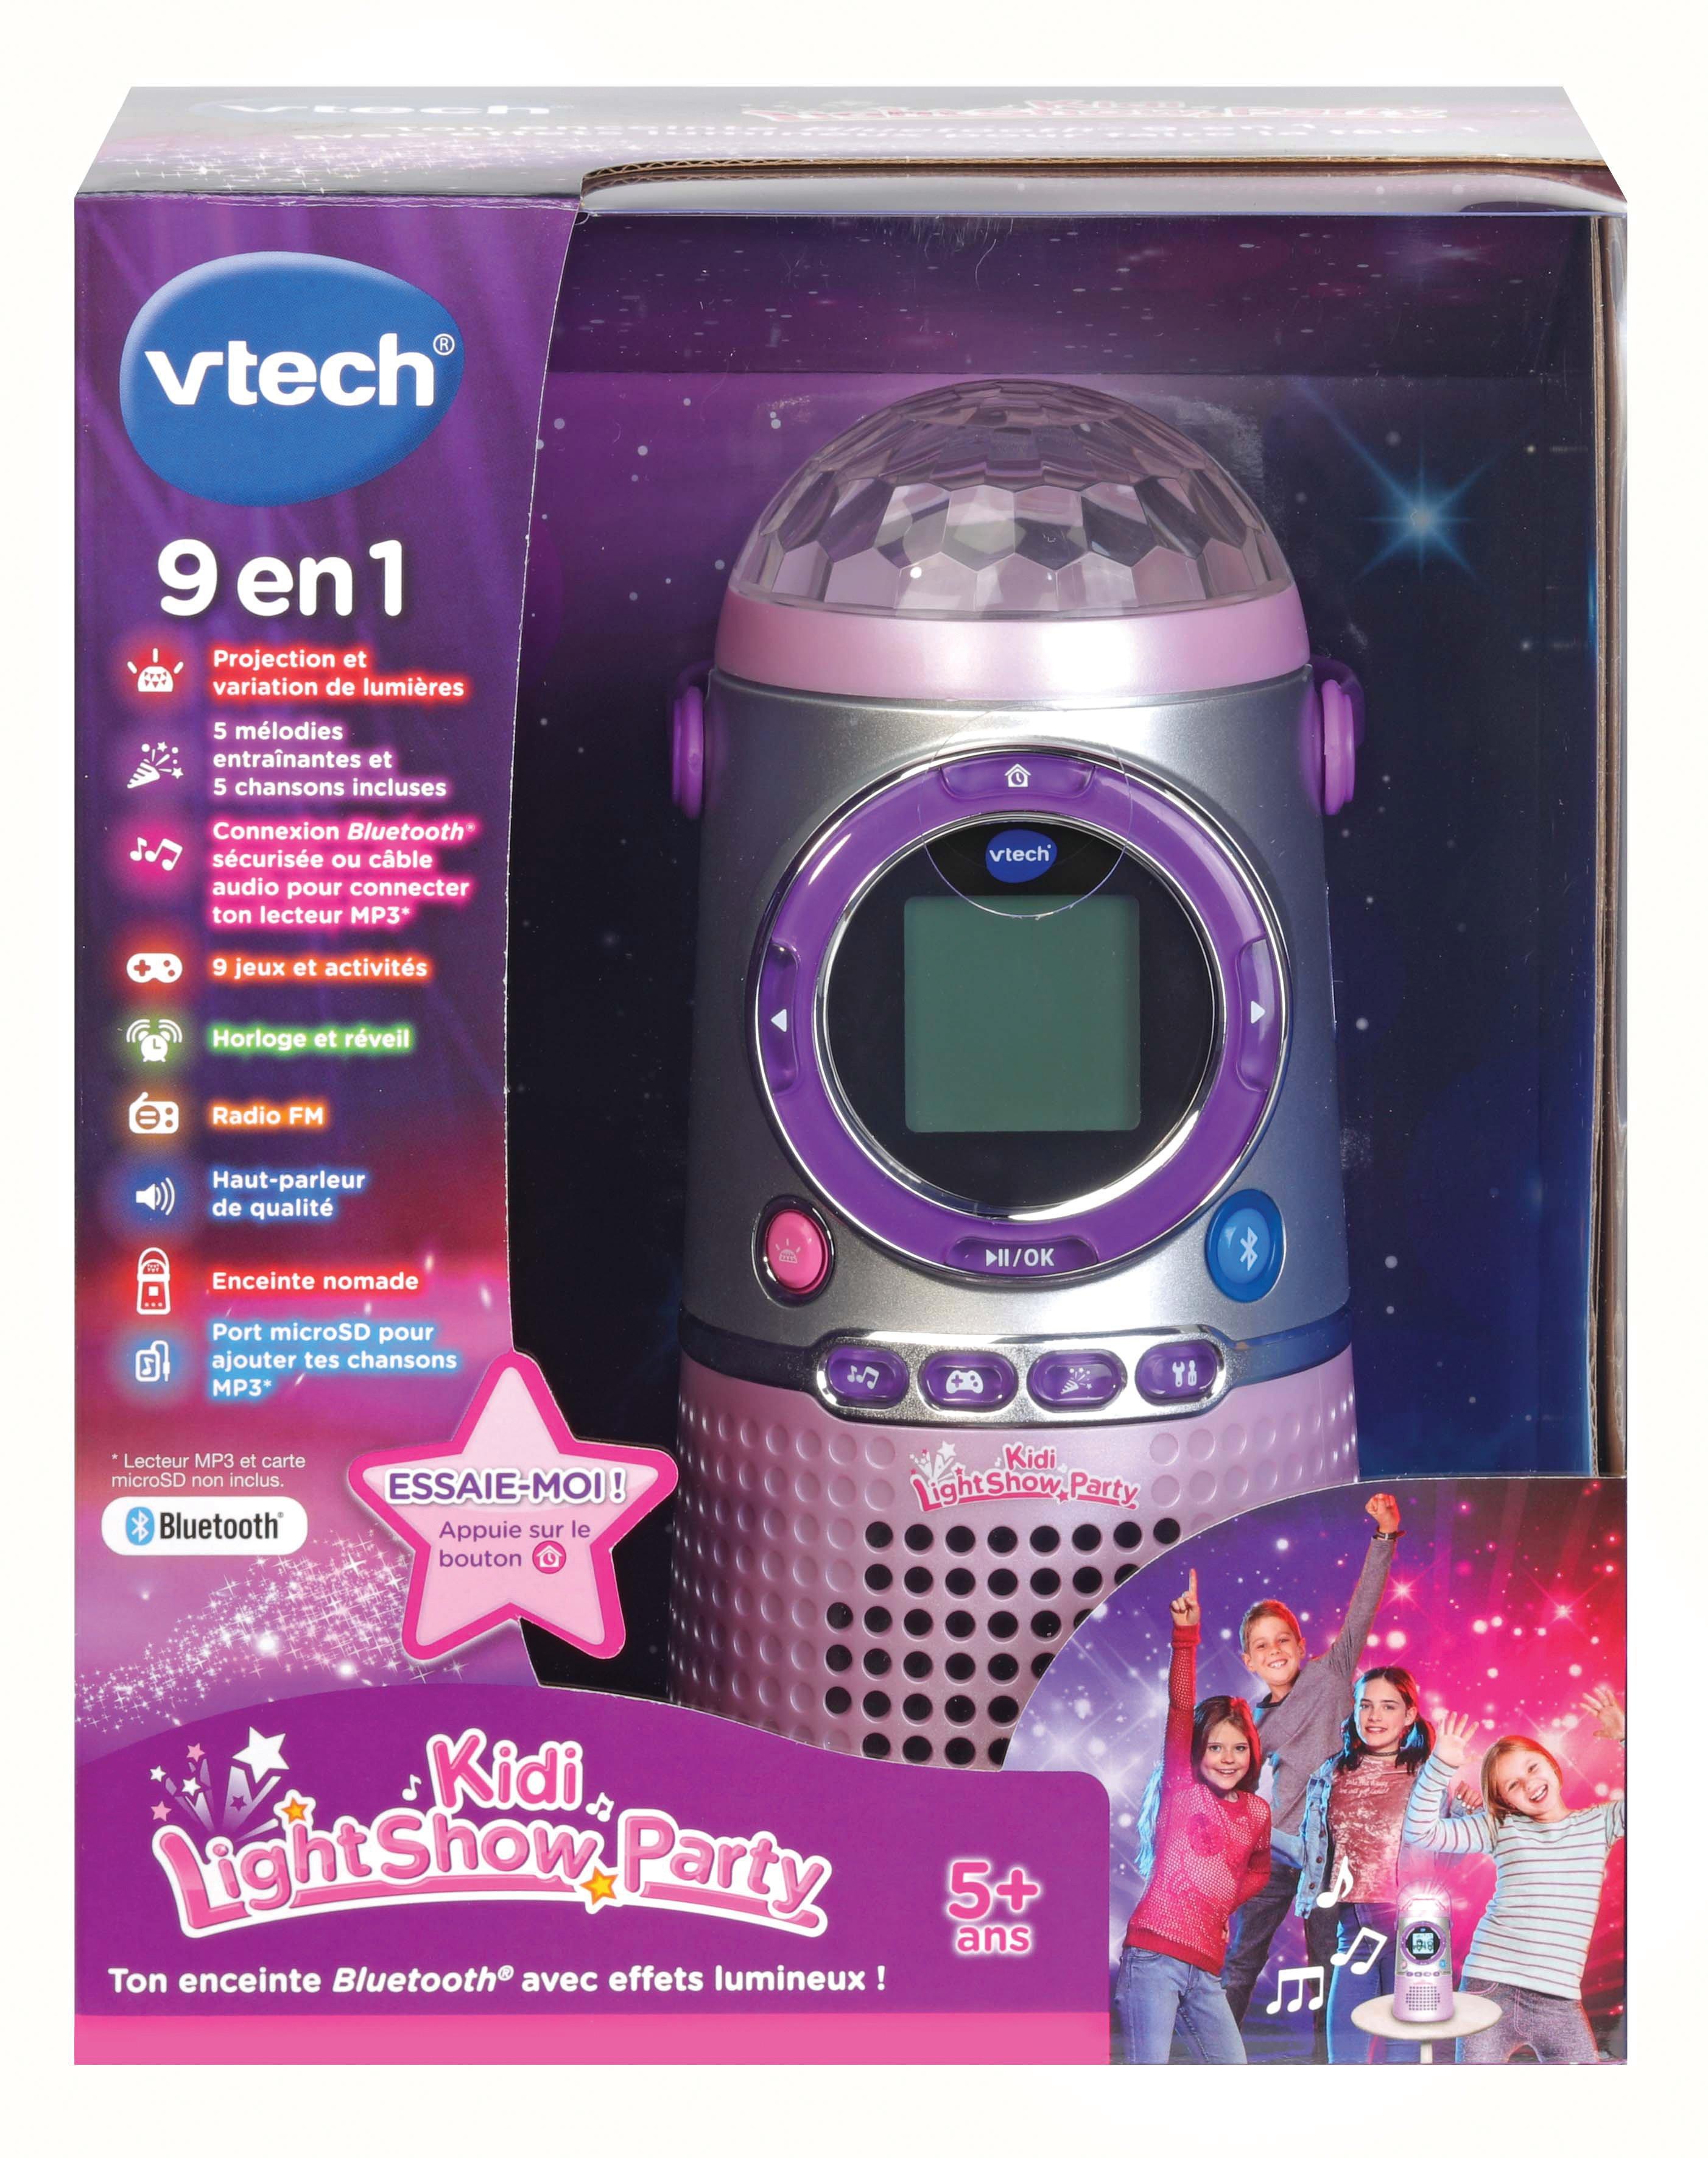 VTech - Music'Kid, Enceinte Bluetooth Enfant, Jouet Musique